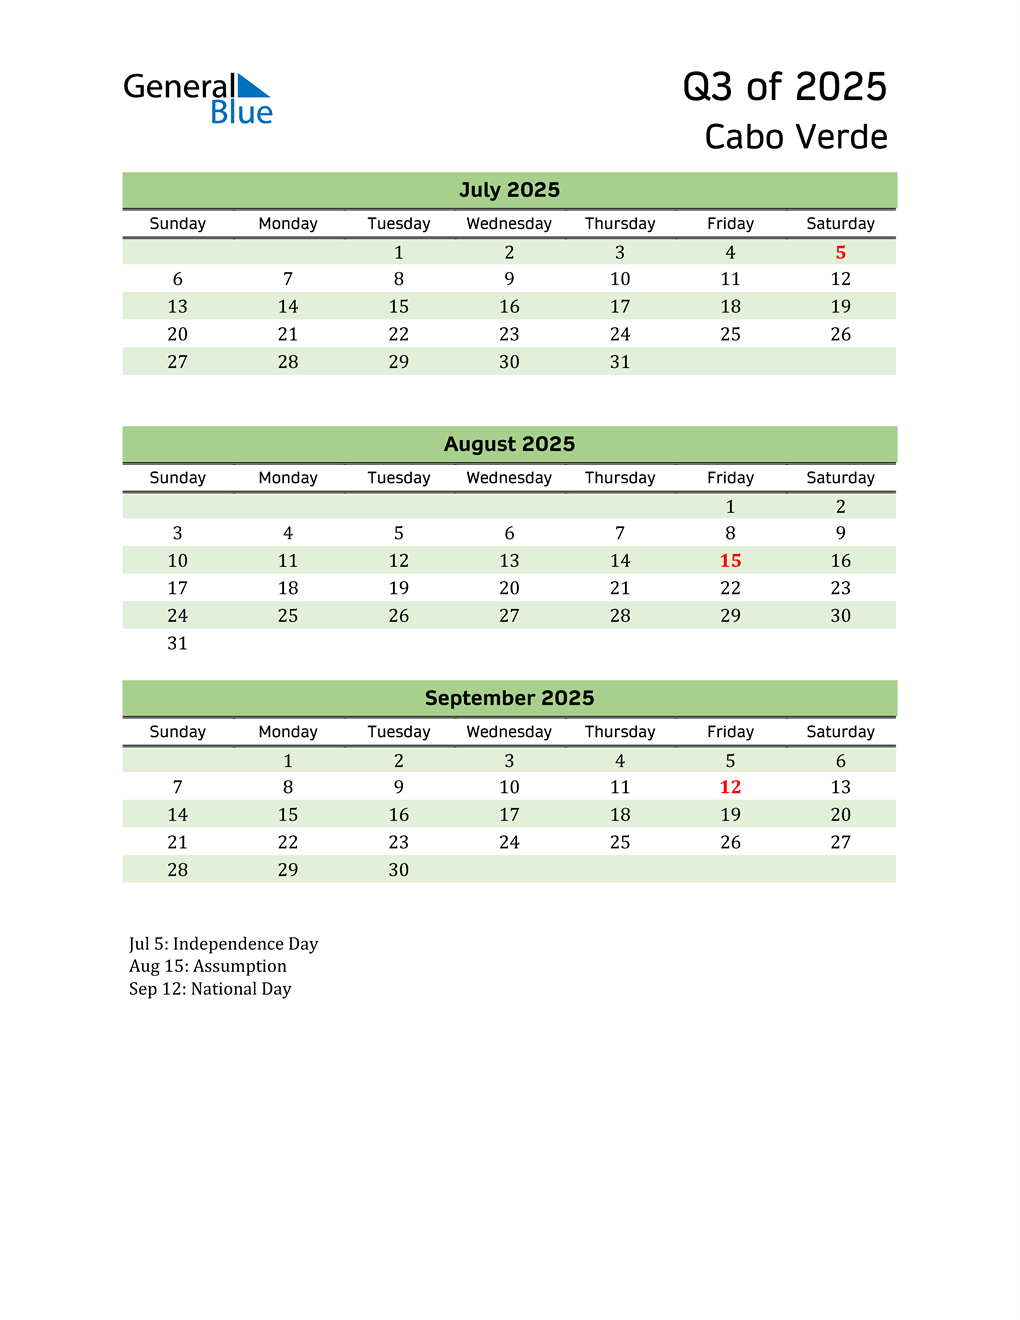  Quarterly Calendar 2025 with Cabo Verde Holidays 